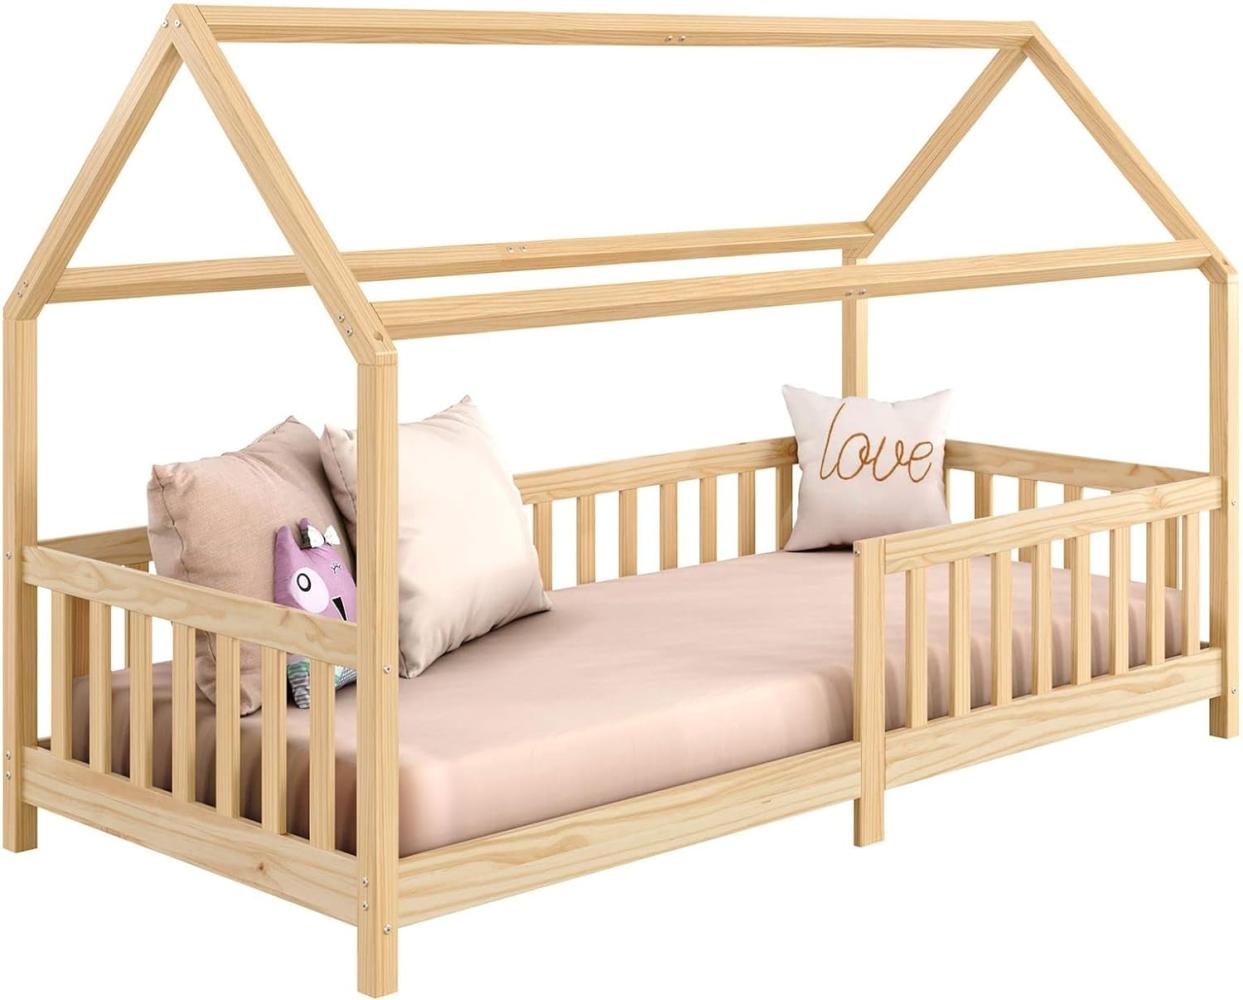 IDIMEX Hausbett NINA aus massiver Kiefer, schönes Montessori Bett in 90 x 200, minimalistisches Kinderbett mit Dach Natur Bild 1